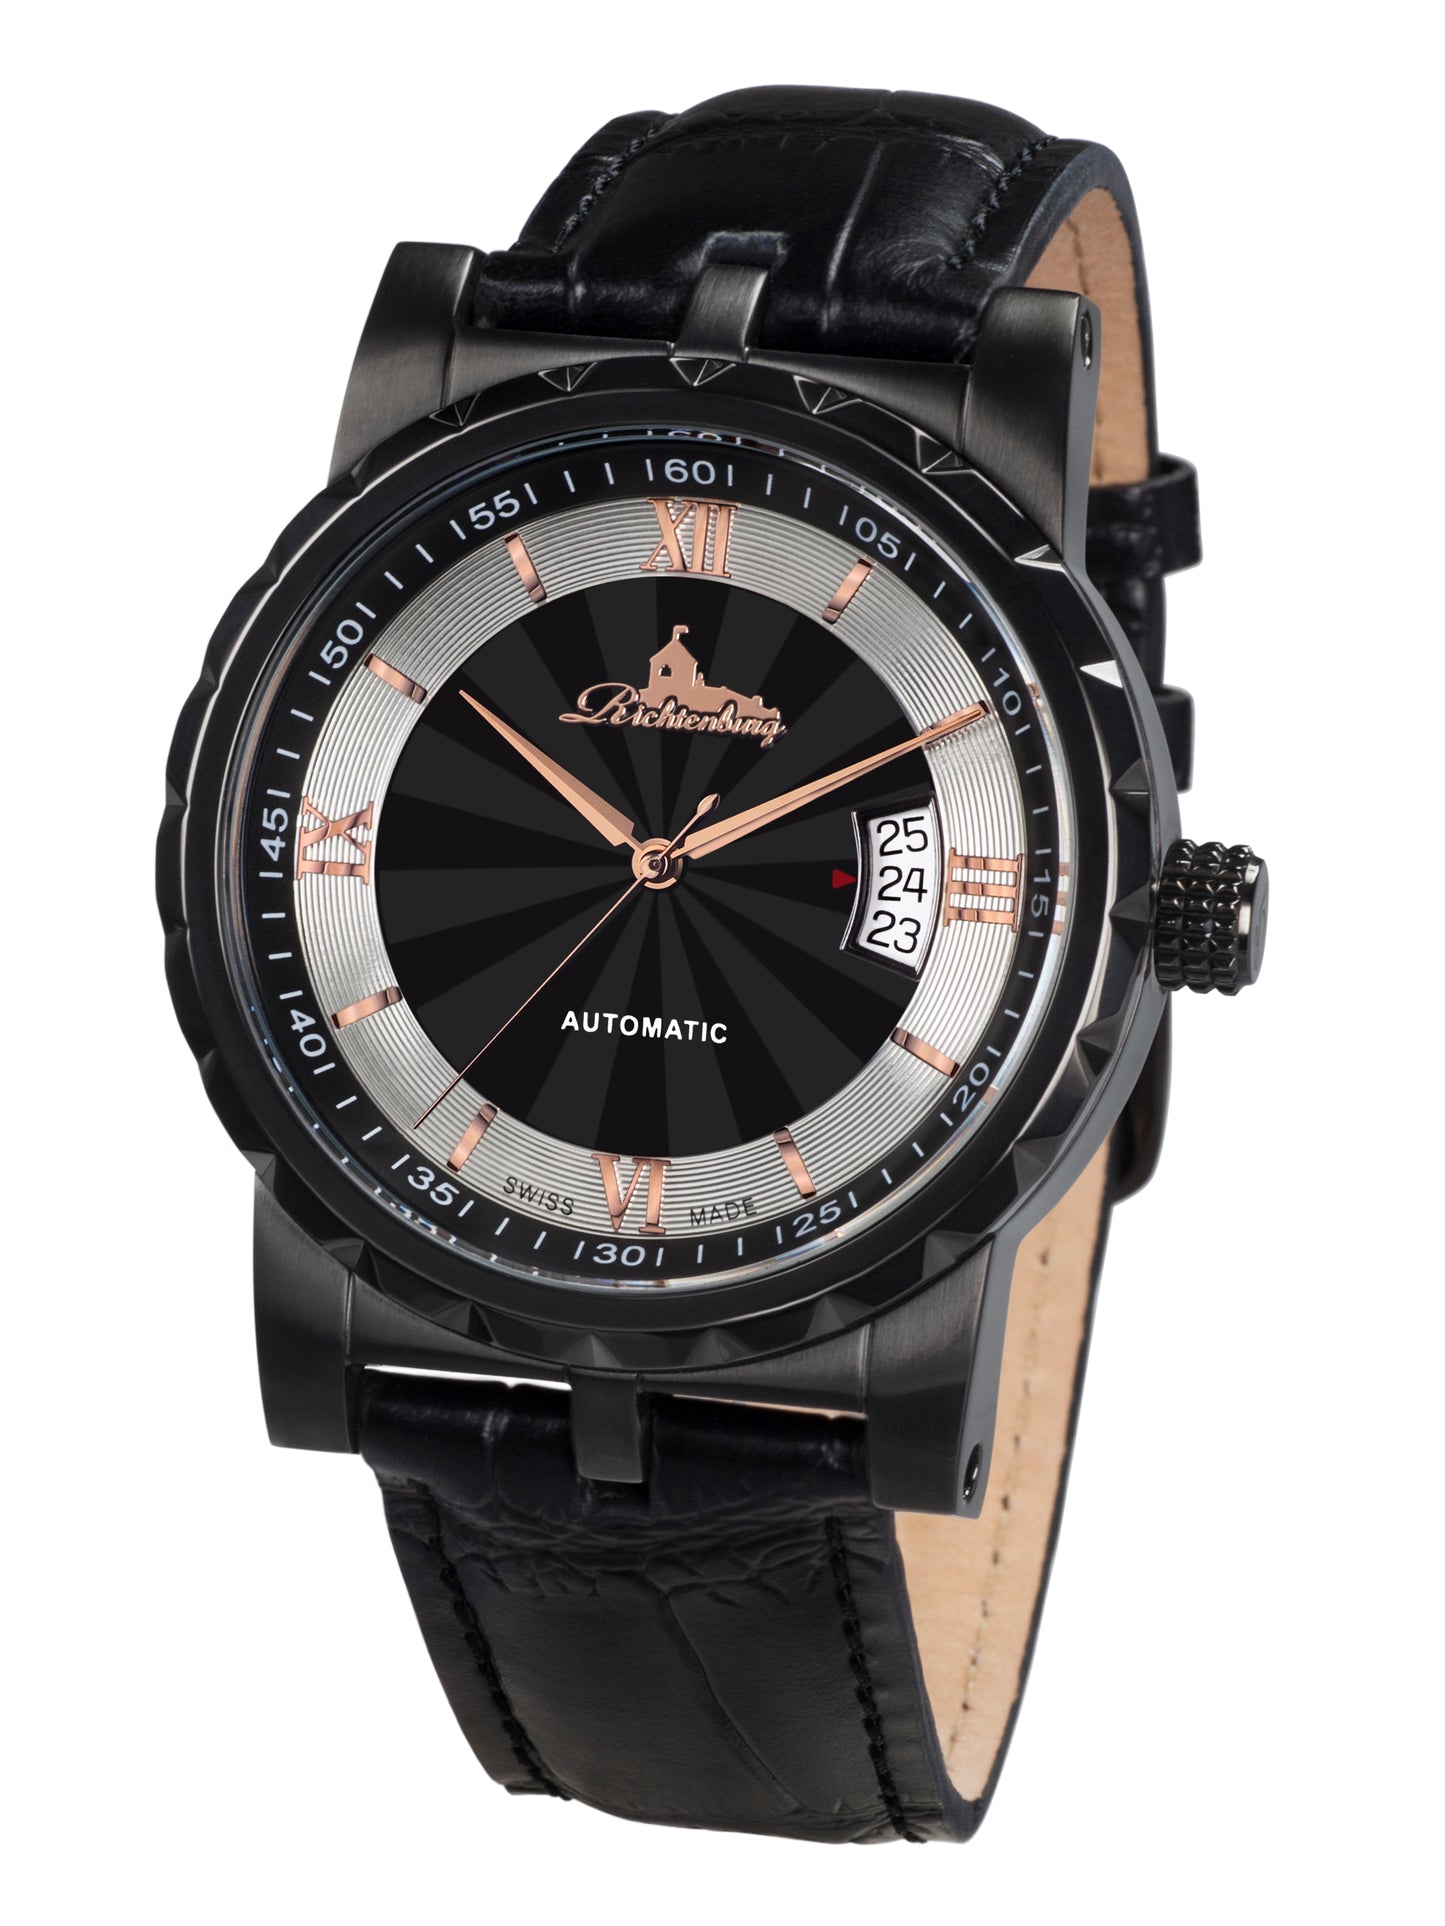 Automatic watches — Lugano — Richtenburg — black IP